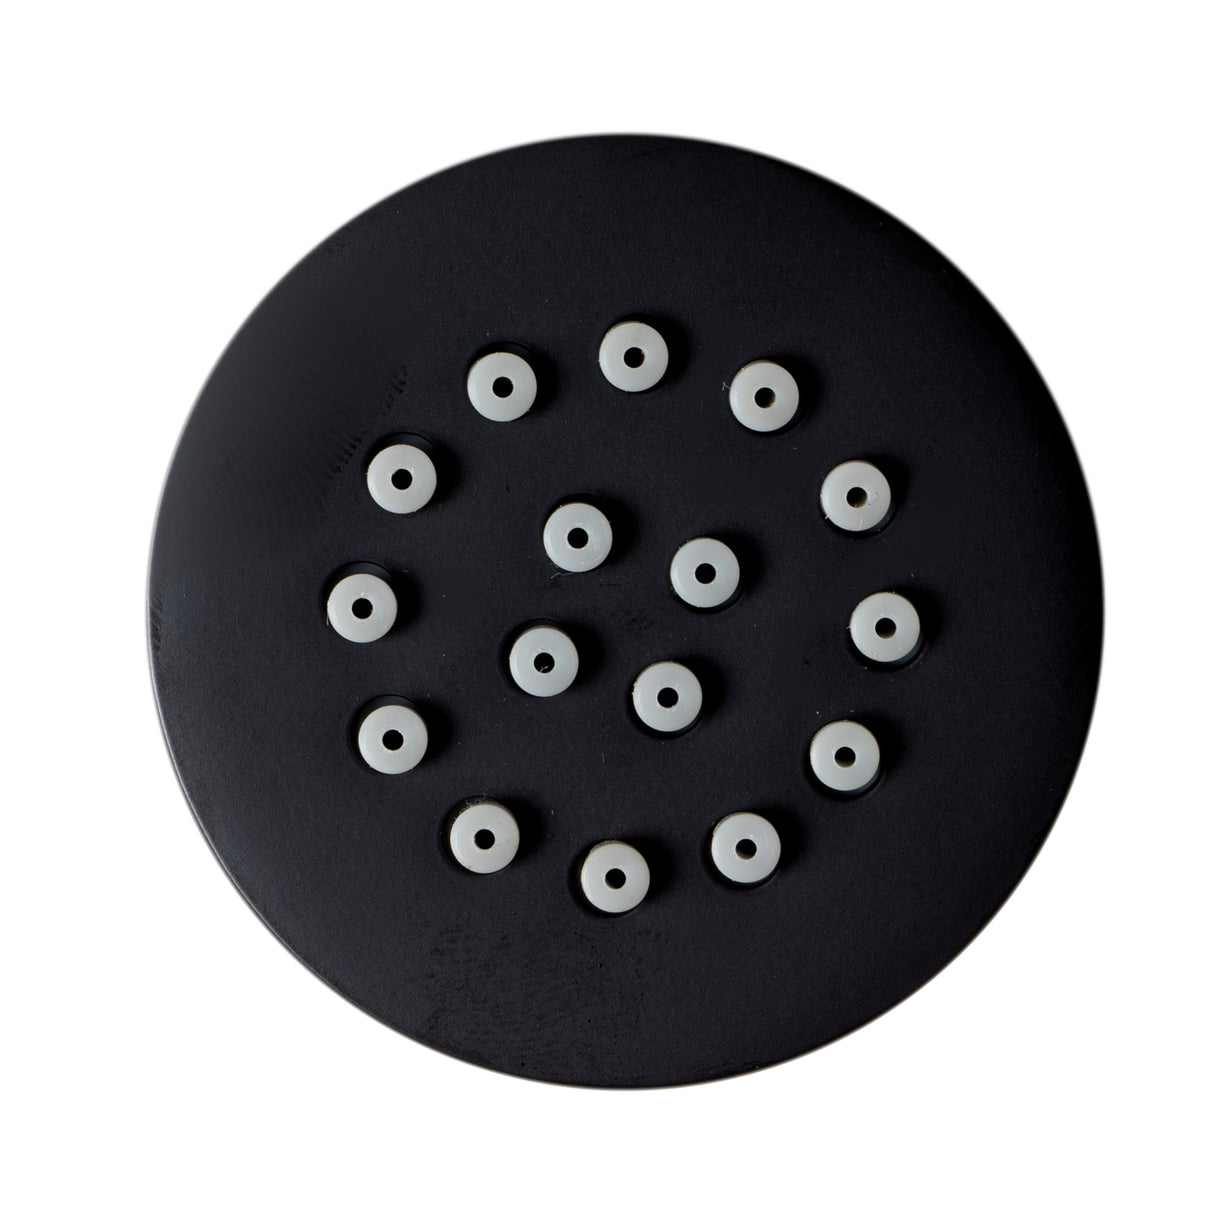 Black Matte 2" Round Adjustable Shower Body Spray